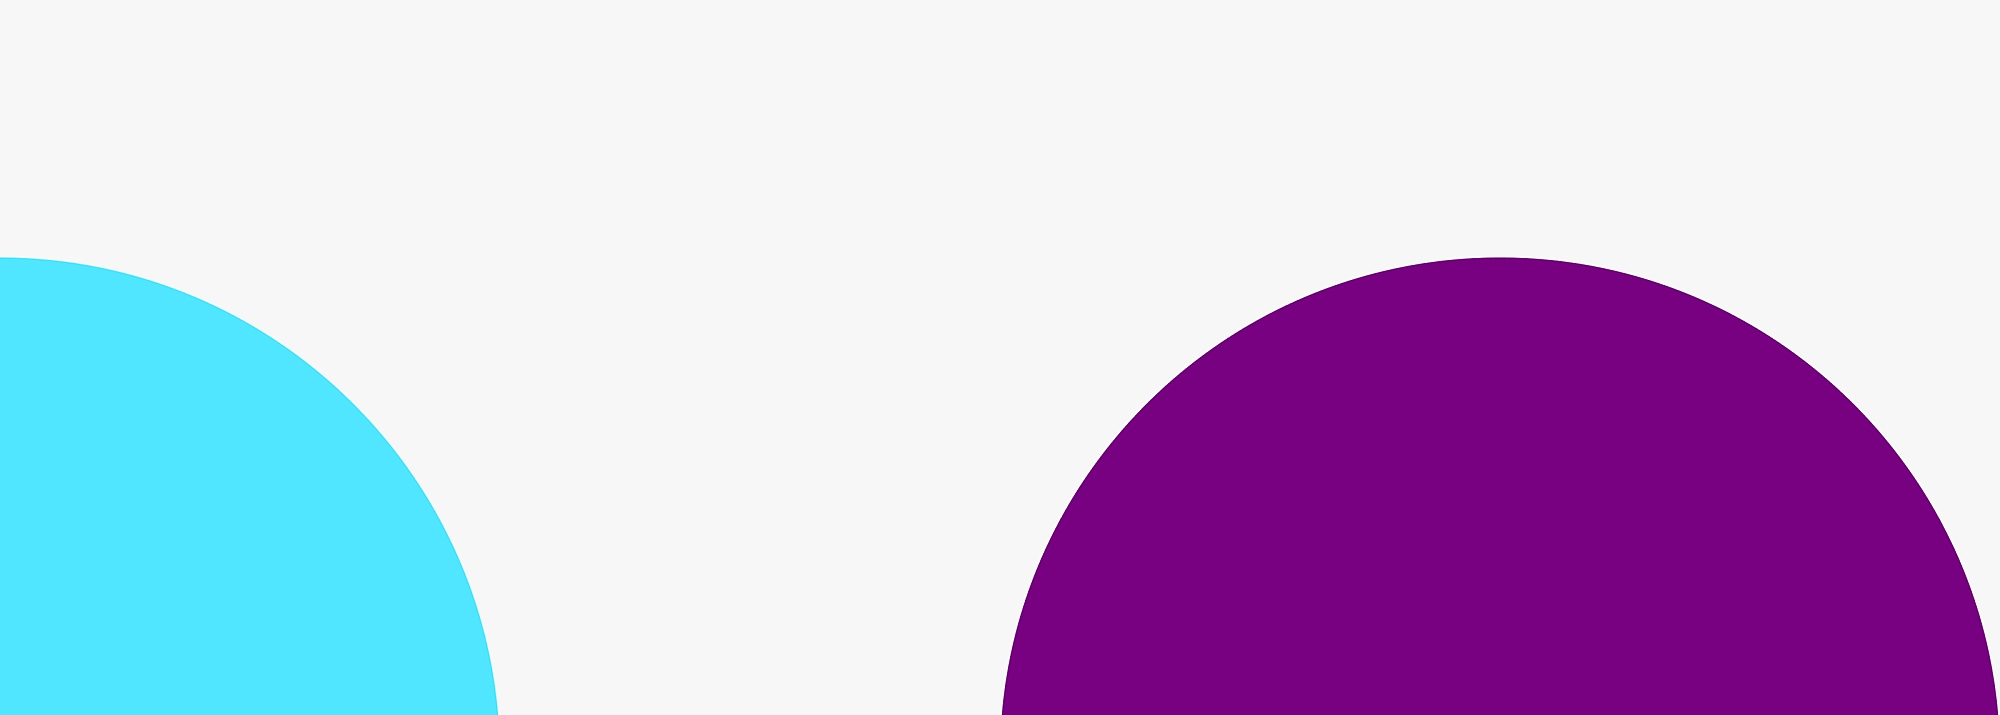 Un cuarto de un círculo azul claro y una mitad de un círculo púrpura sobre un fondo gris claro